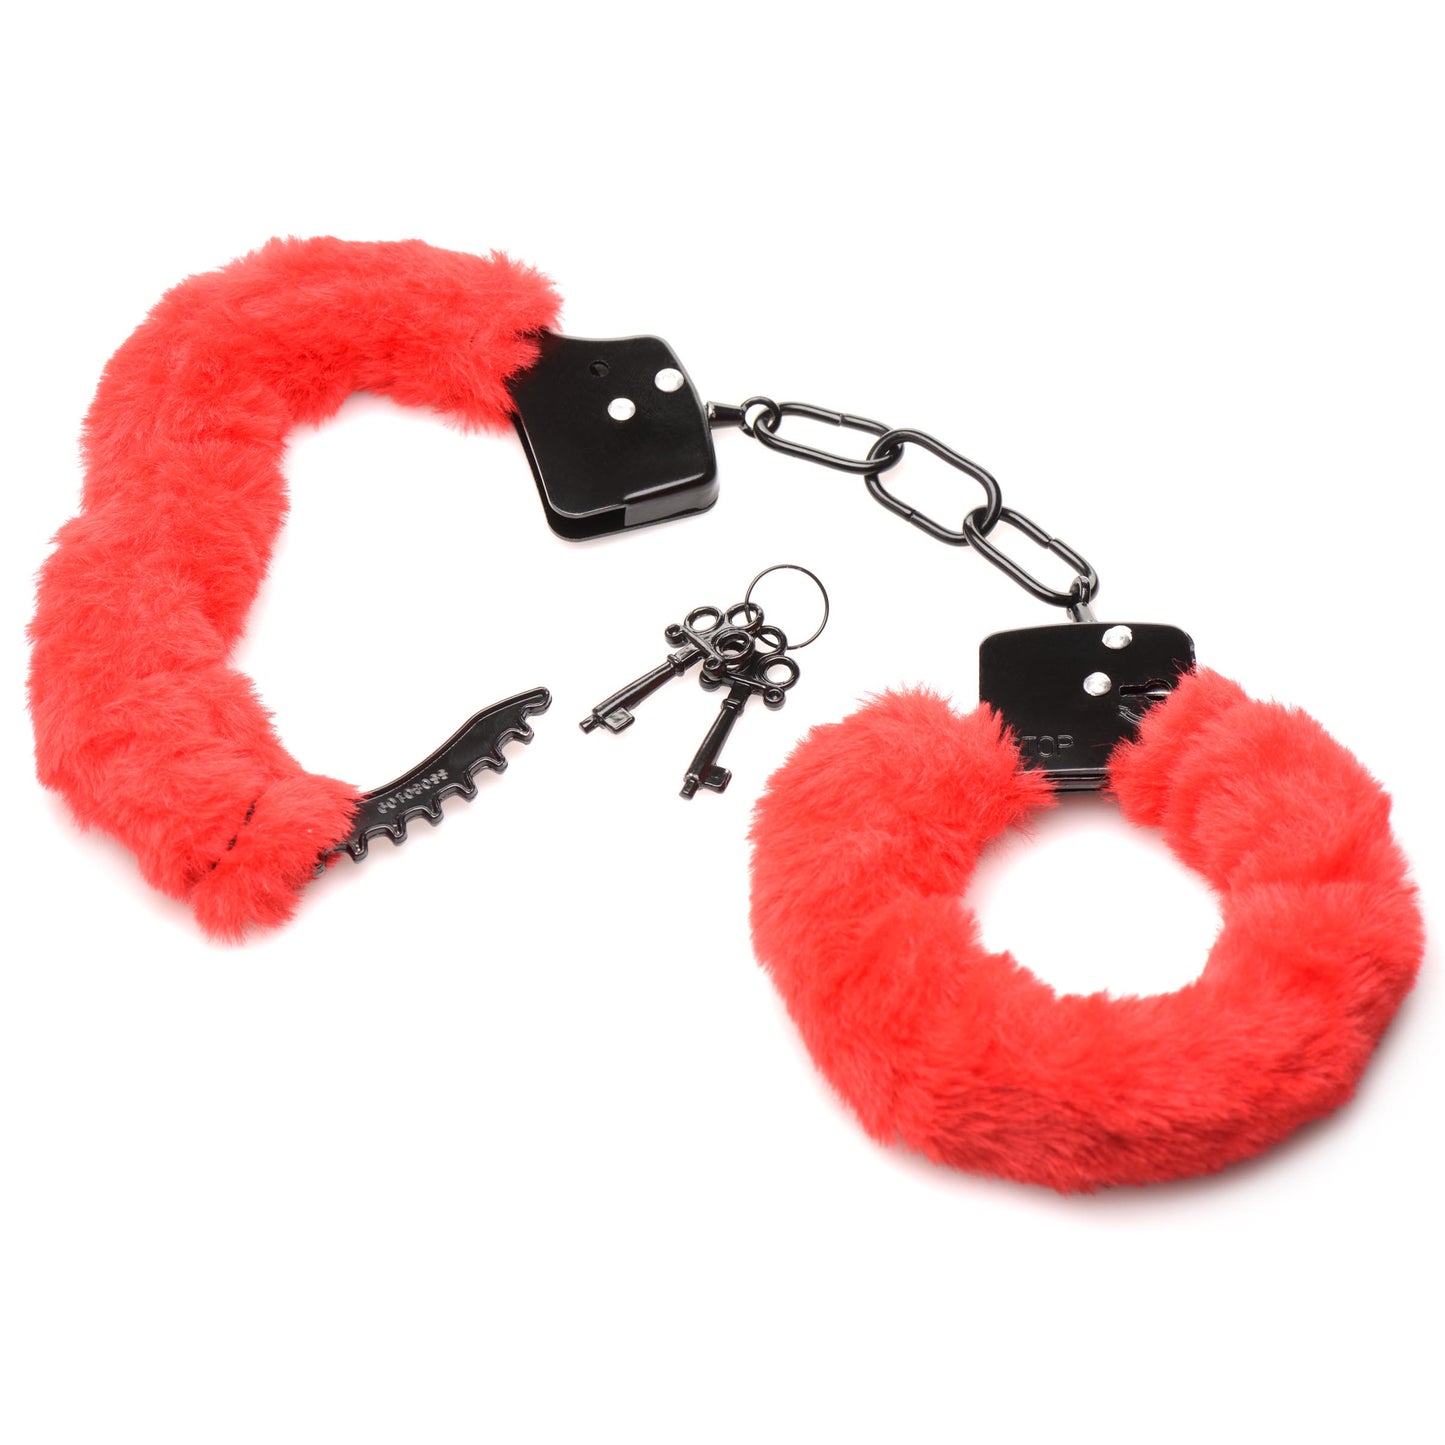 Cuffed In Fur Furry Handcuffs - Red - UABDSM